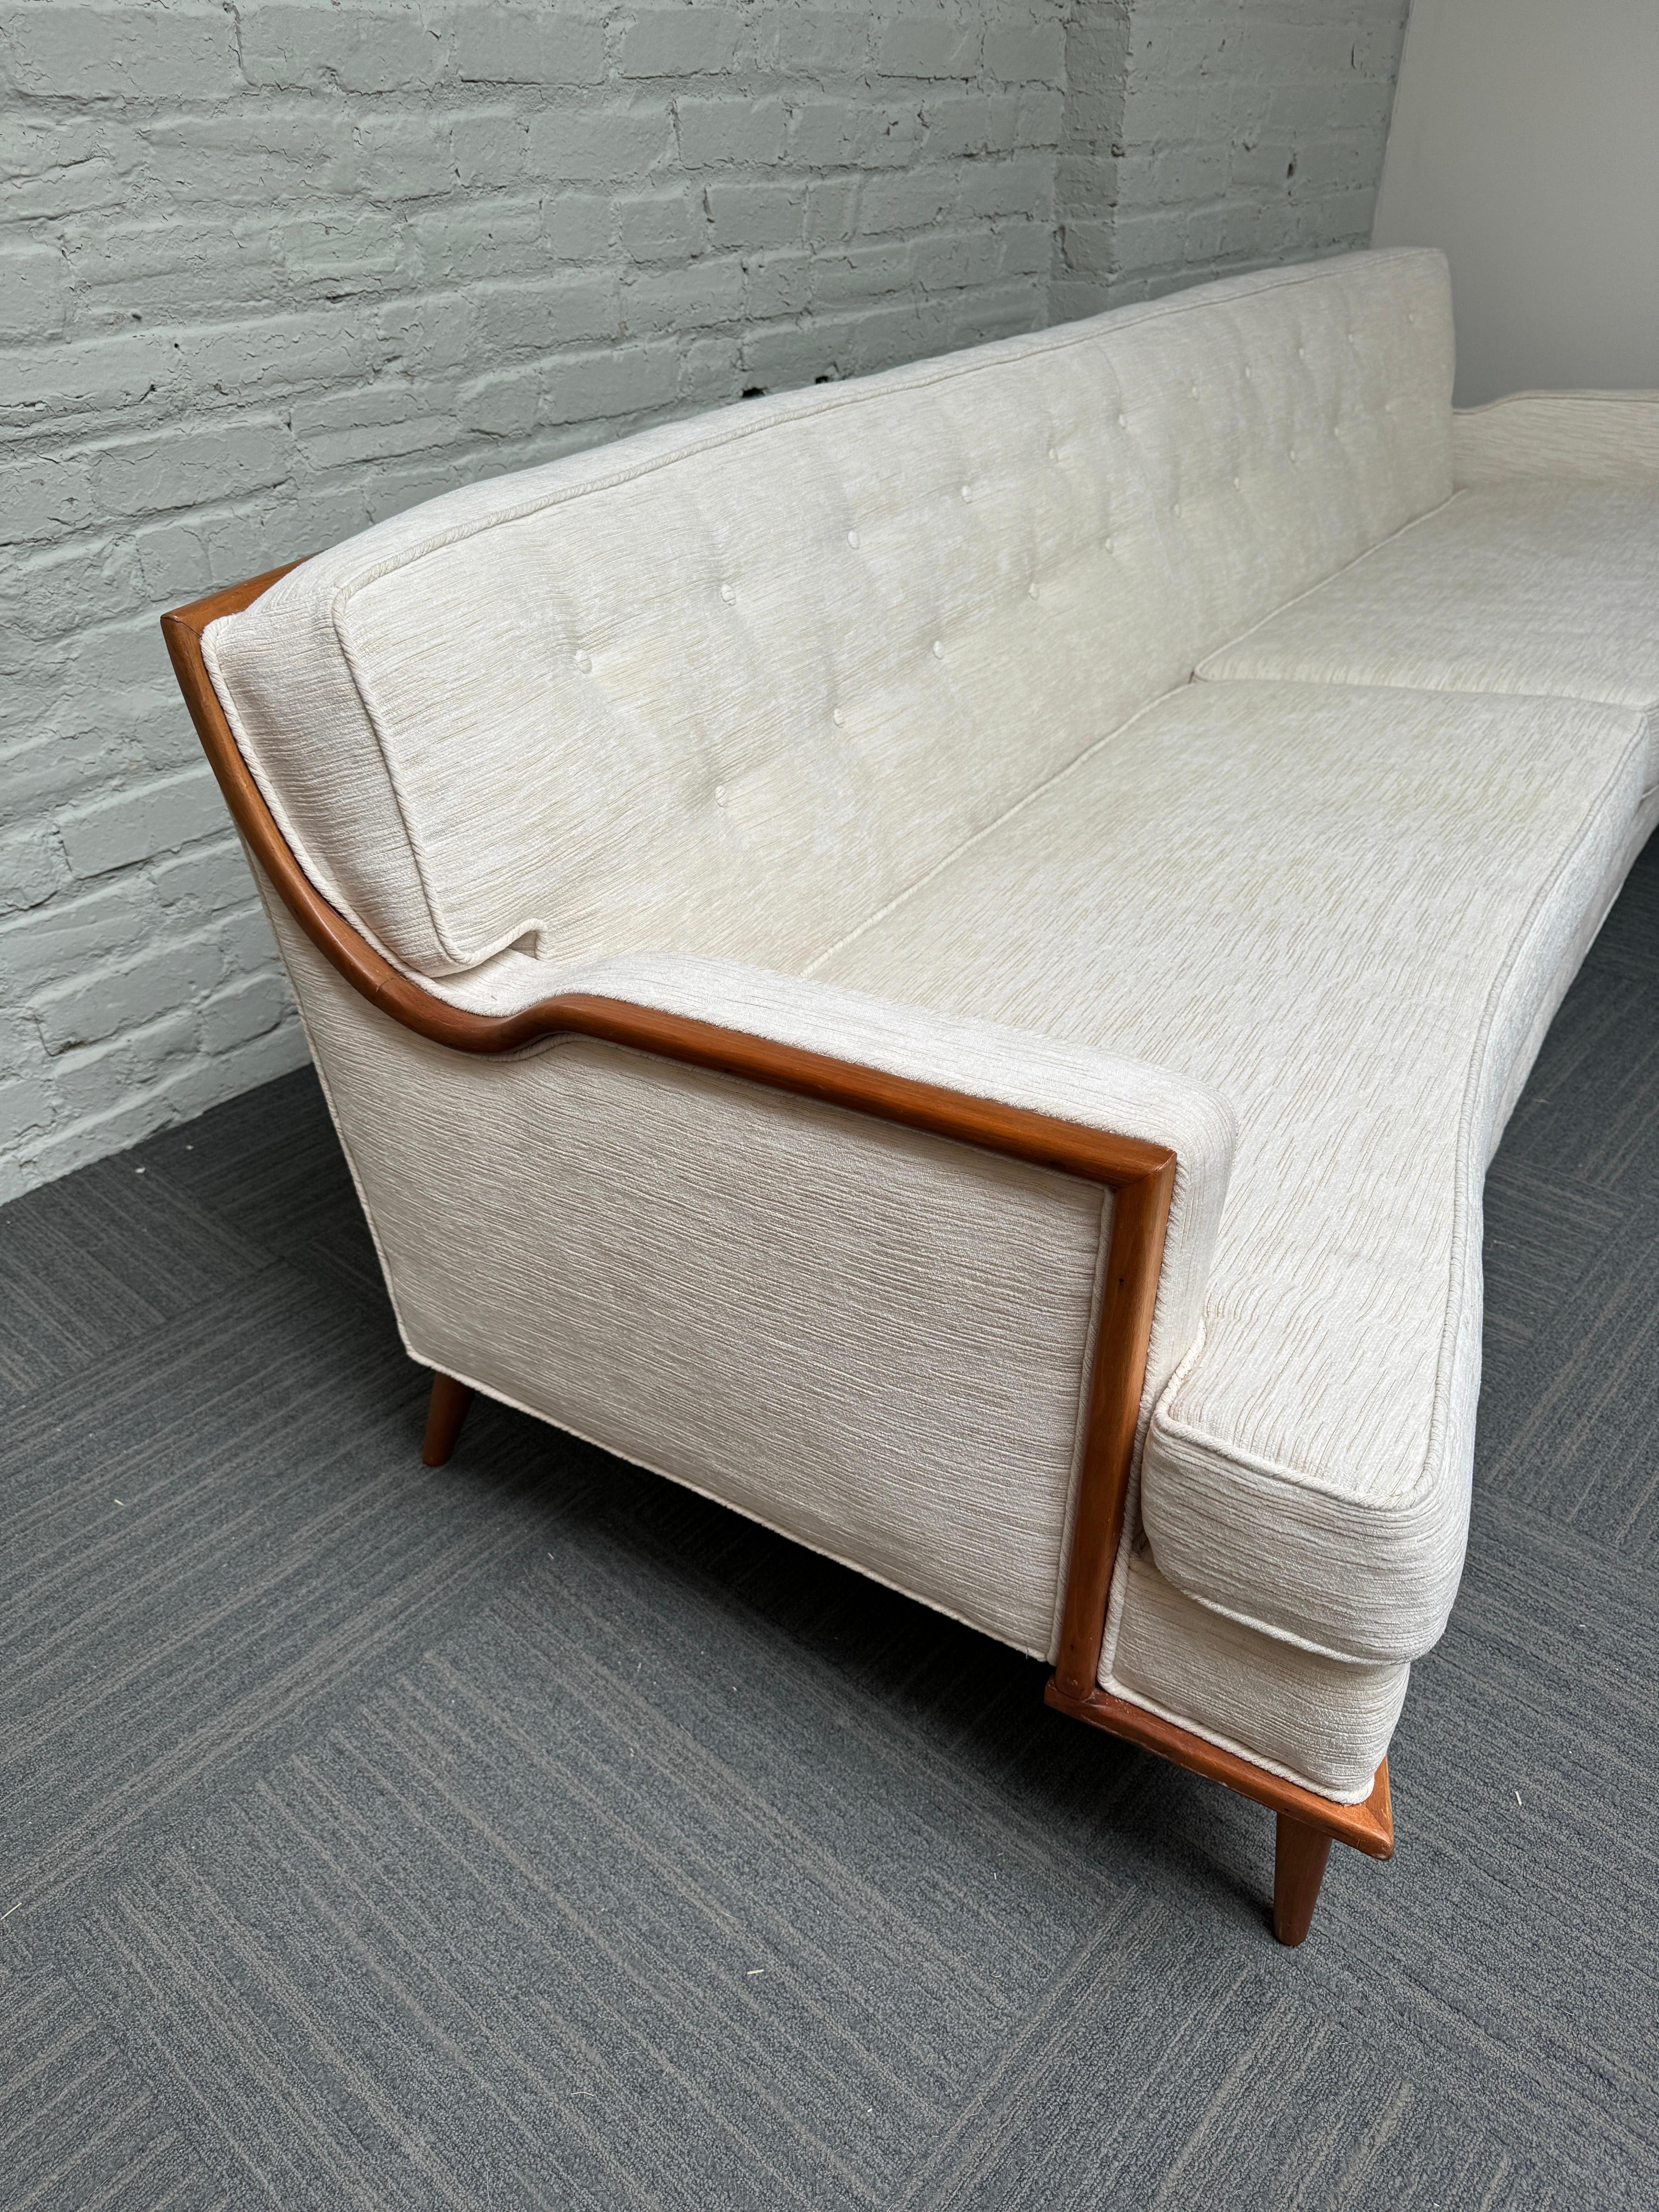 Ce canapé à dossier incurvé de style Adrian Pearsall, datant des années 1960, est absolument magnifique. Il est attribué à la société Baker Furniture Company. La pièce présente un cadre unique en noyer apparent et des pieds avant doubles (7 pieds au